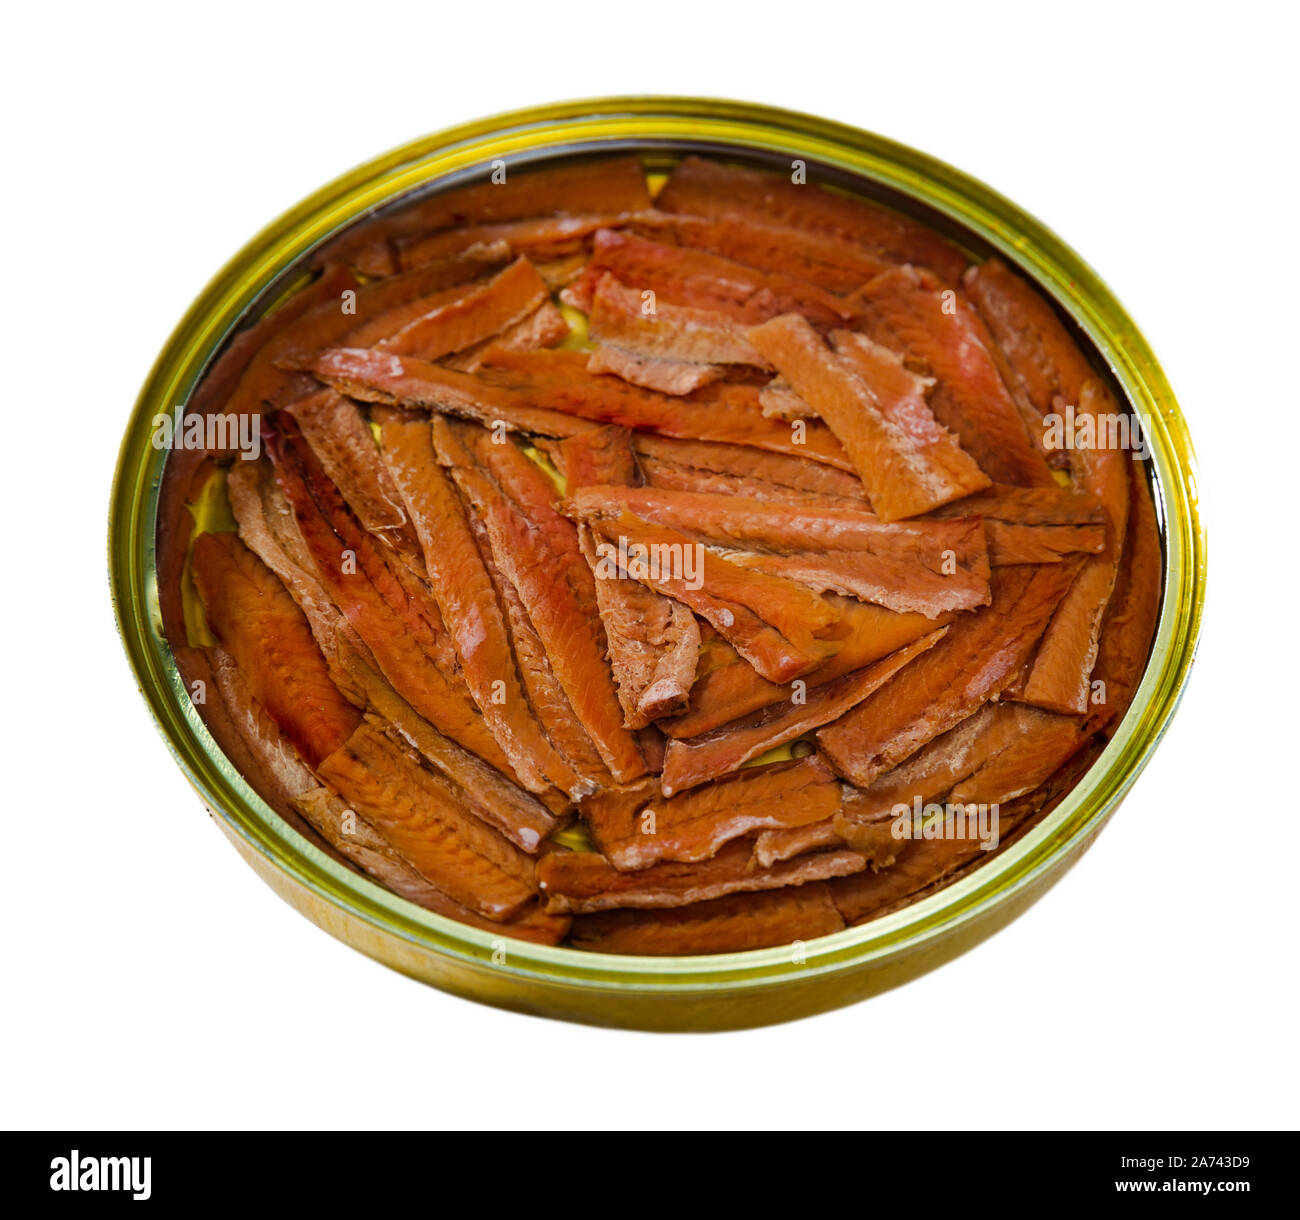 Tradizionale spagnola decapati filetti di acciuga in olio in lattina aperta. Isolato su sfondo bianco Foto Stock